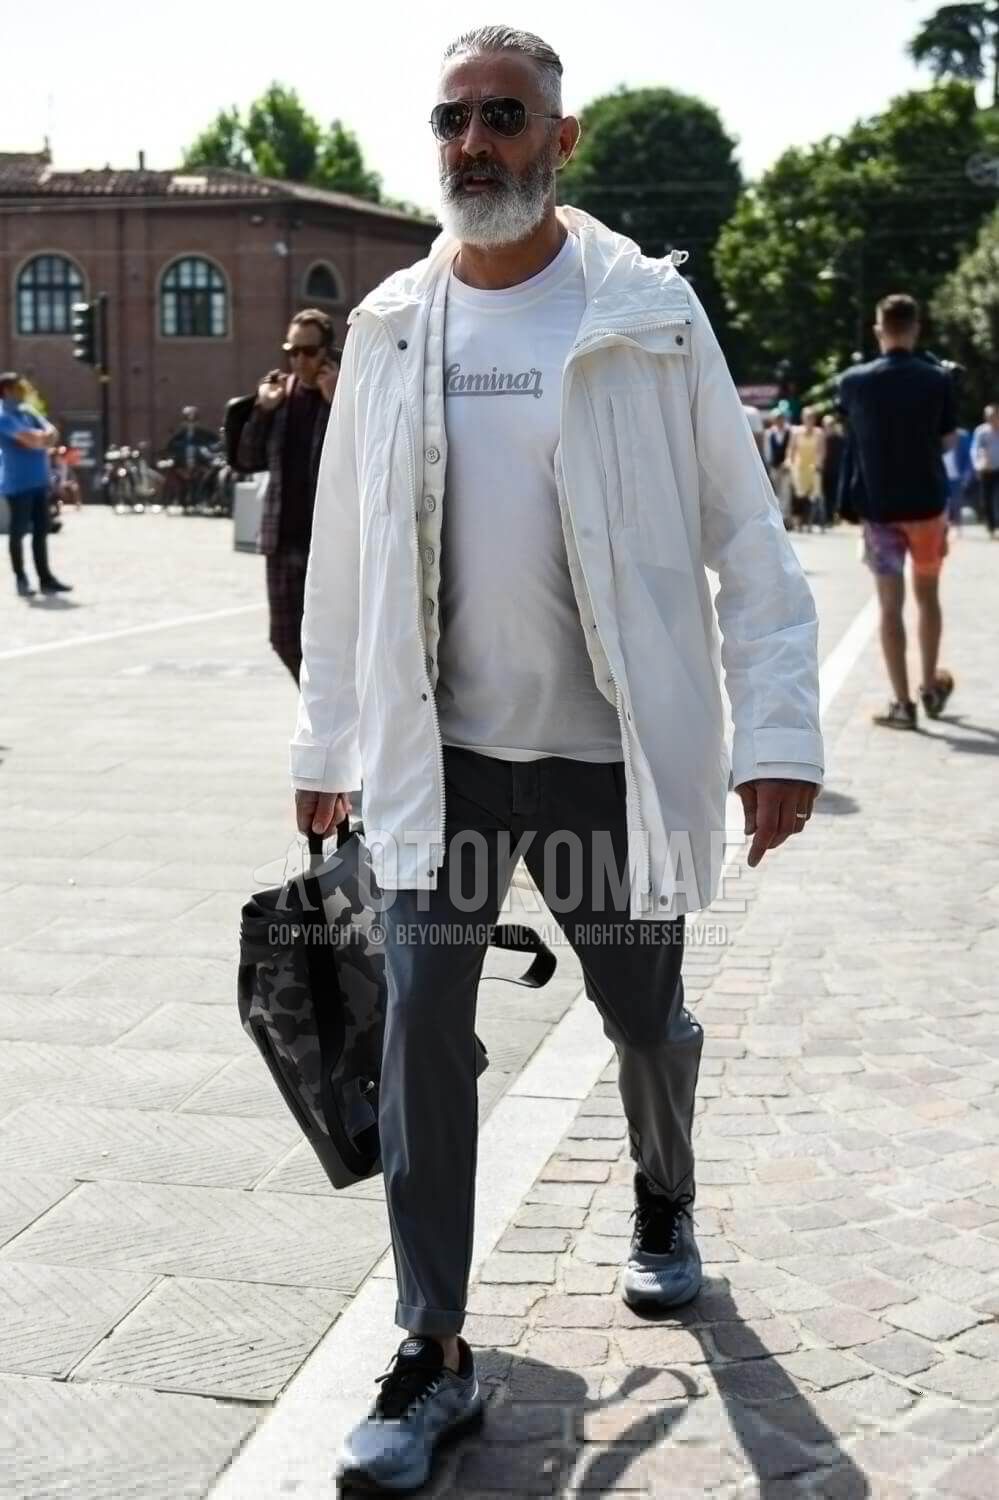 白コート メンズ特集 大人の男が参考にしたい注目の着こなしとアイテムを紹介 メンズファッションメディア Govgov 男前研究所